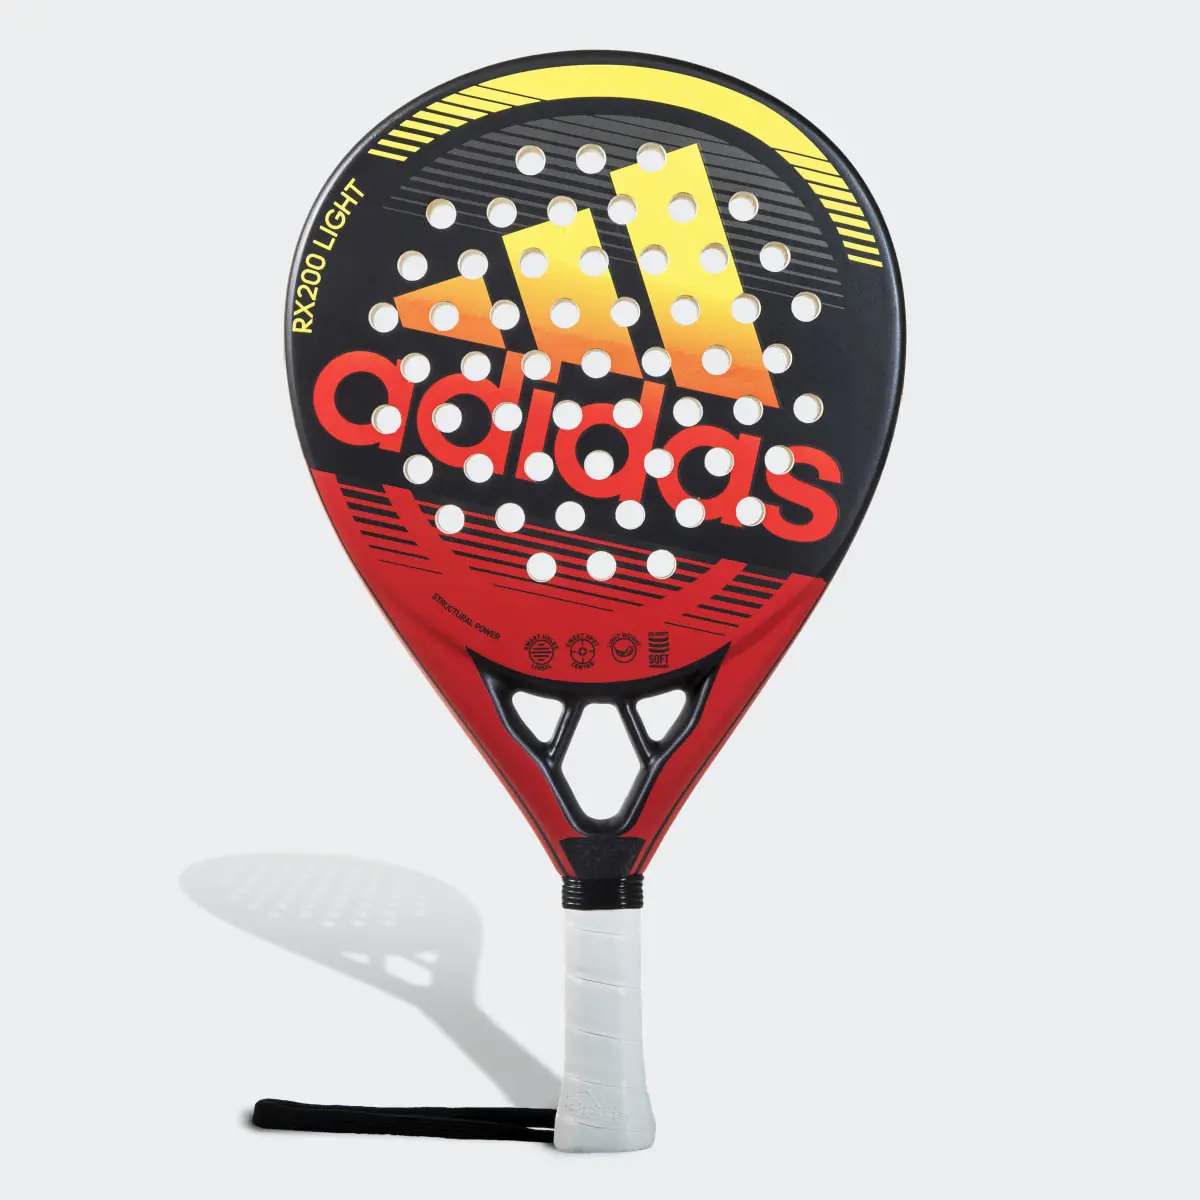 Adidas RX 200 Light Racquet. 2